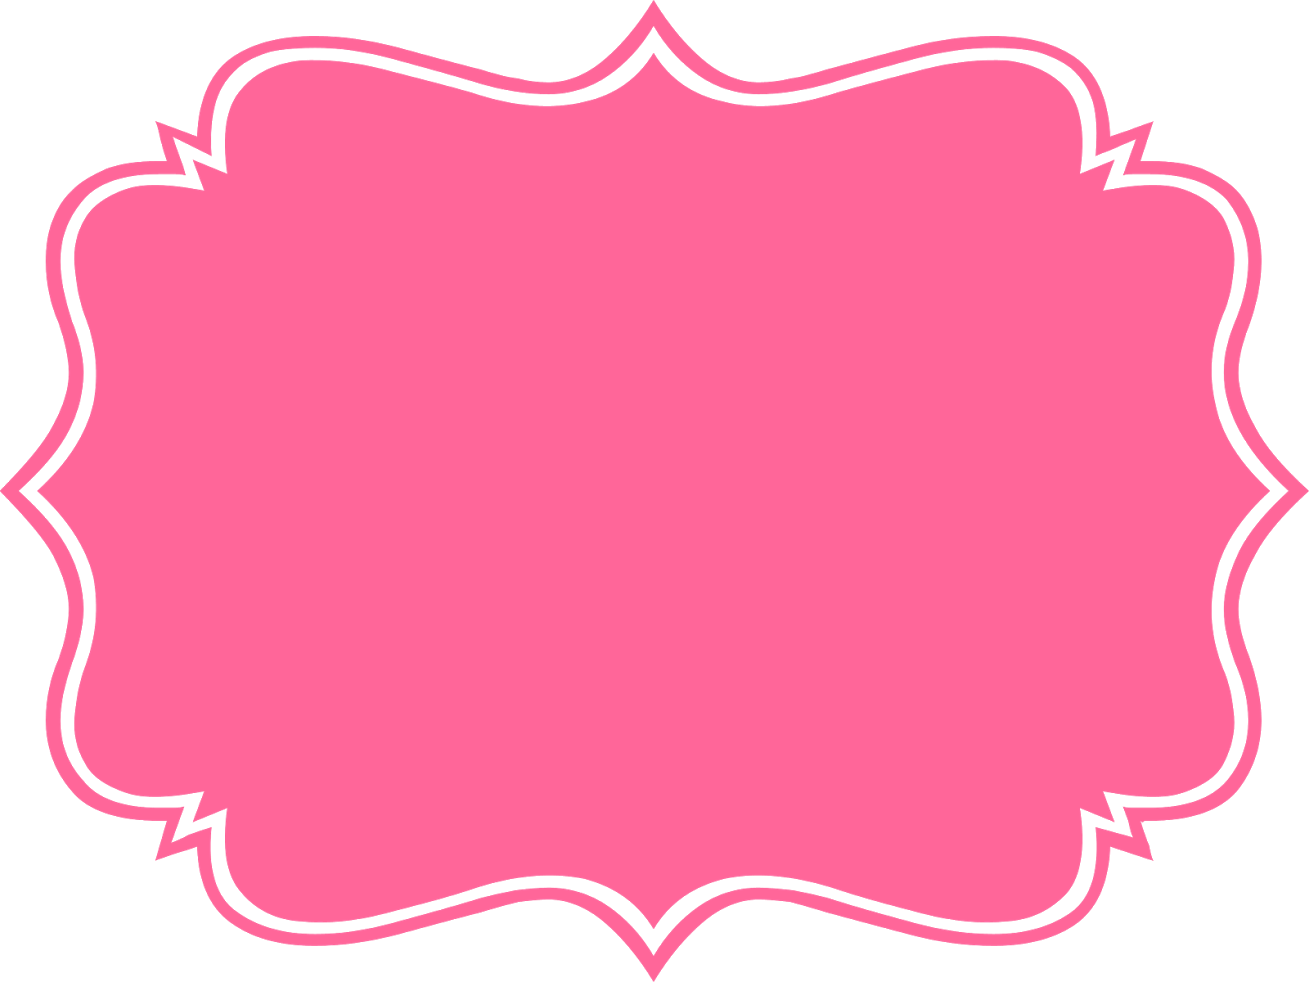 Фон для надписи png. Розовая табличка для надписи. Розовая рамка для надписи. Розовая фигурная рамка. Фигурная плашка.